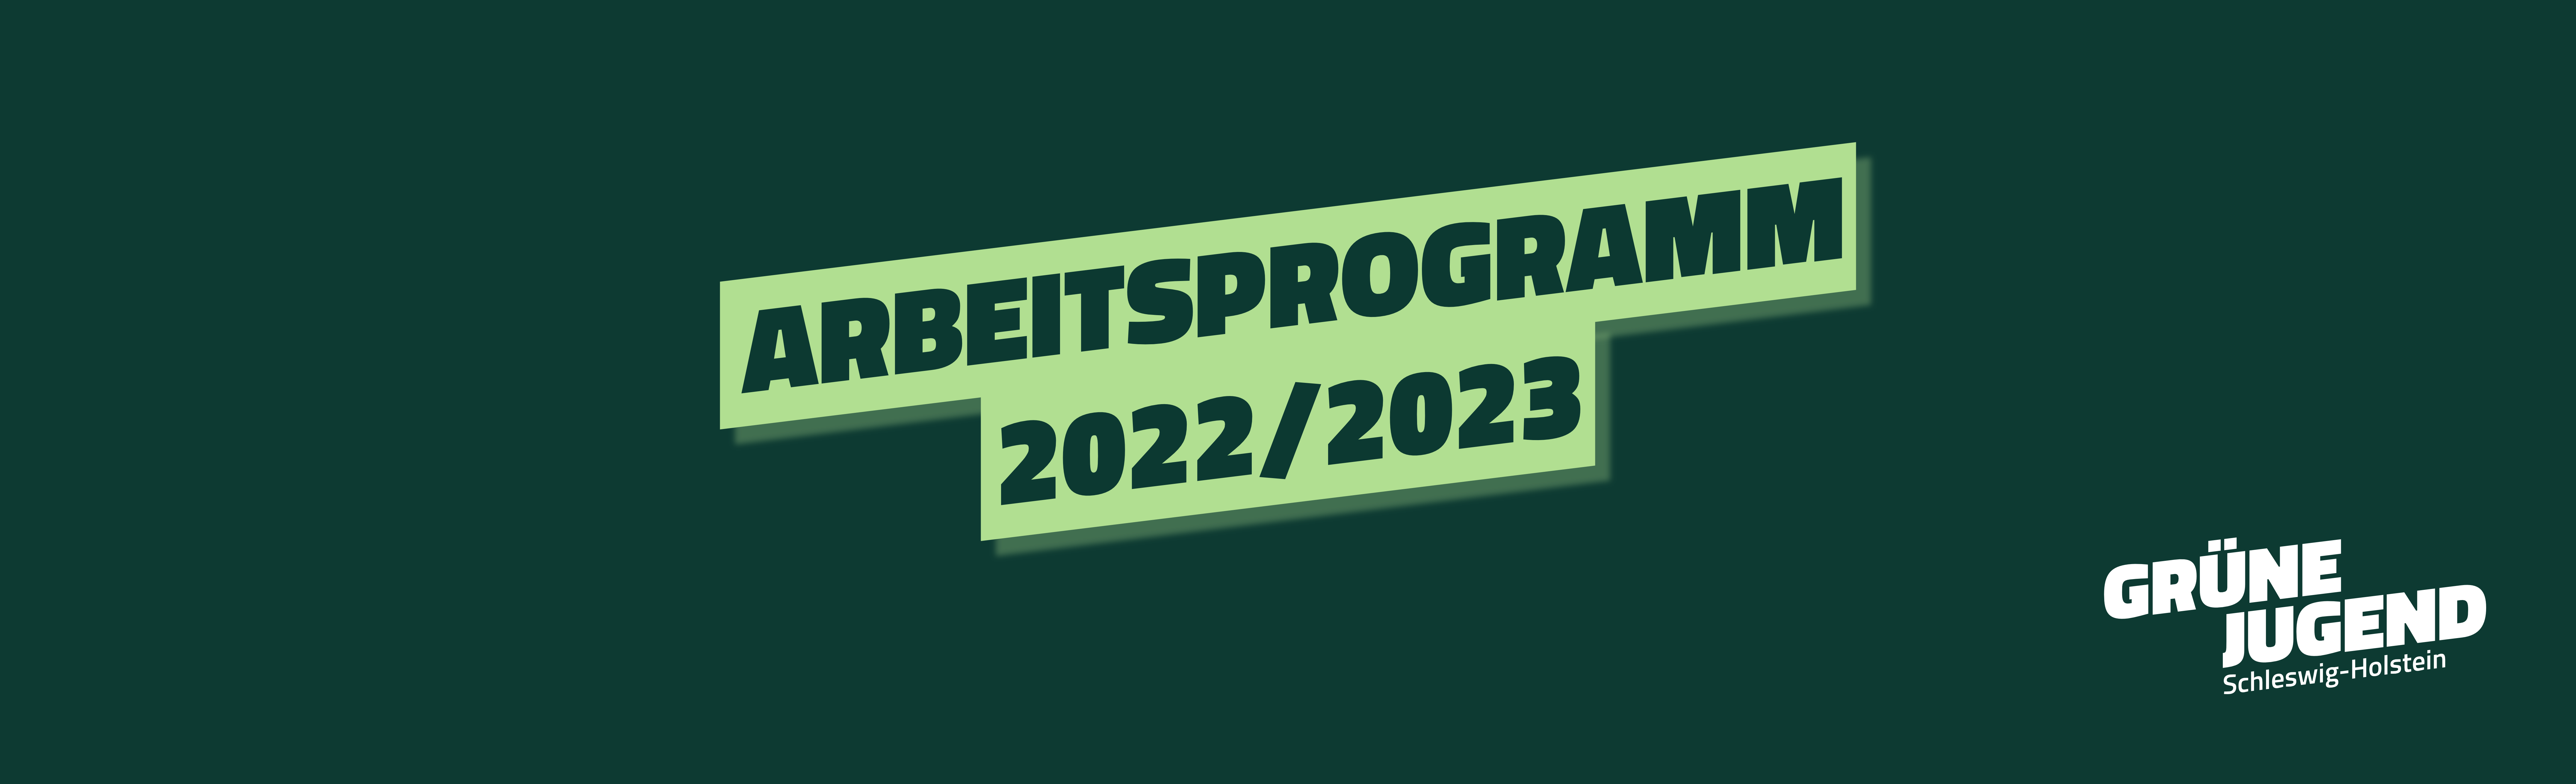 Arbeitsprogramm der GRÜNEN JUGEND Schleswig-Holstein 2022/23